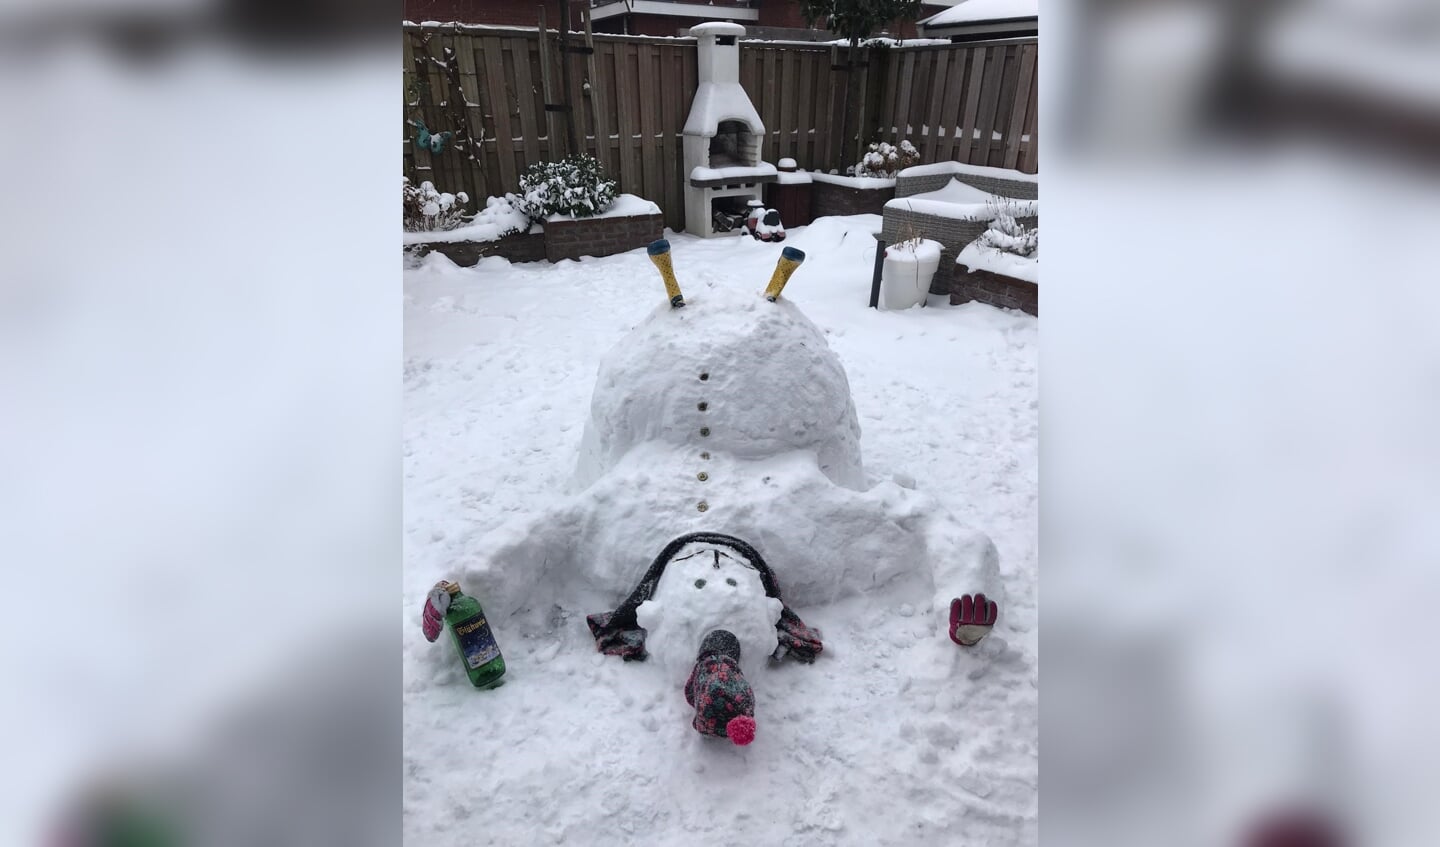 Trotse oma Truus Warmderdam stuurde de sneeuwpop van kleinkinderen Dana, Anouk en Faas Dignum in. De sneeuwpop is er maar bij gaan liggen, in de achtertuin in de Prins Bernhardstraat in Sassenheim. 